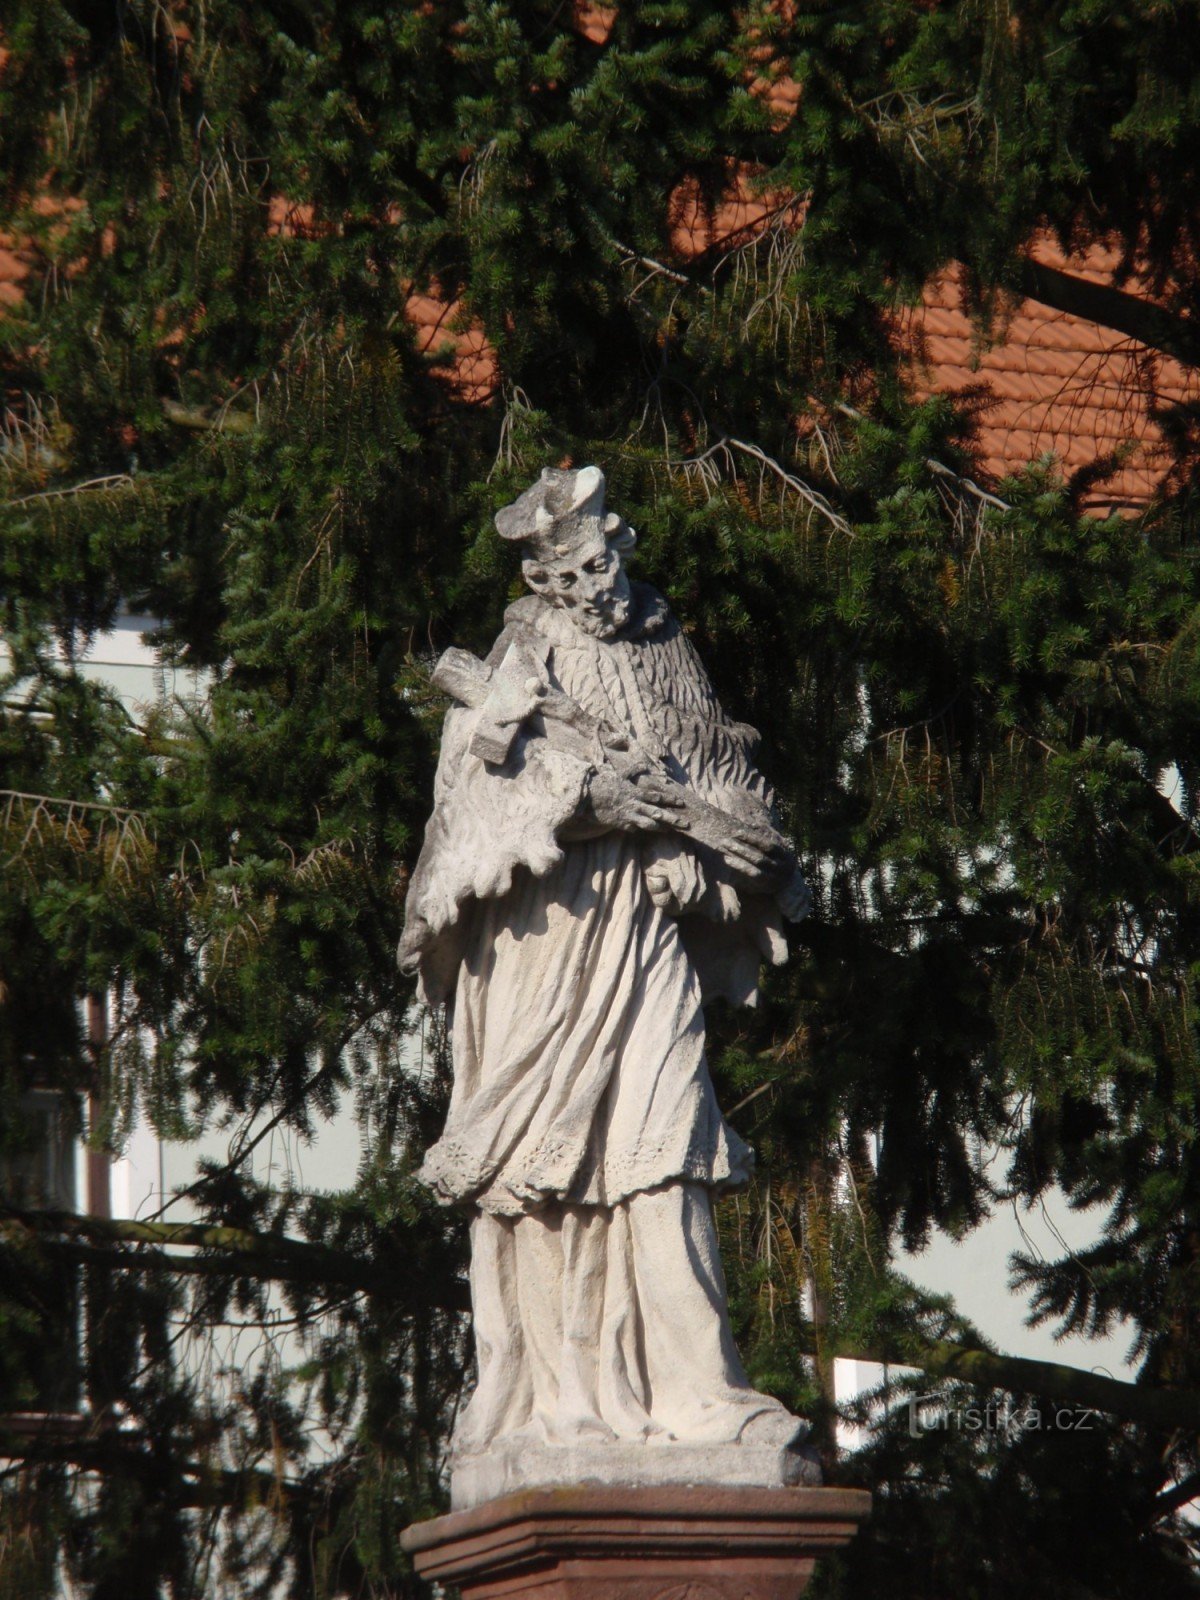 Statuia Sf. Jan Nepomucký în Velká Bíteš